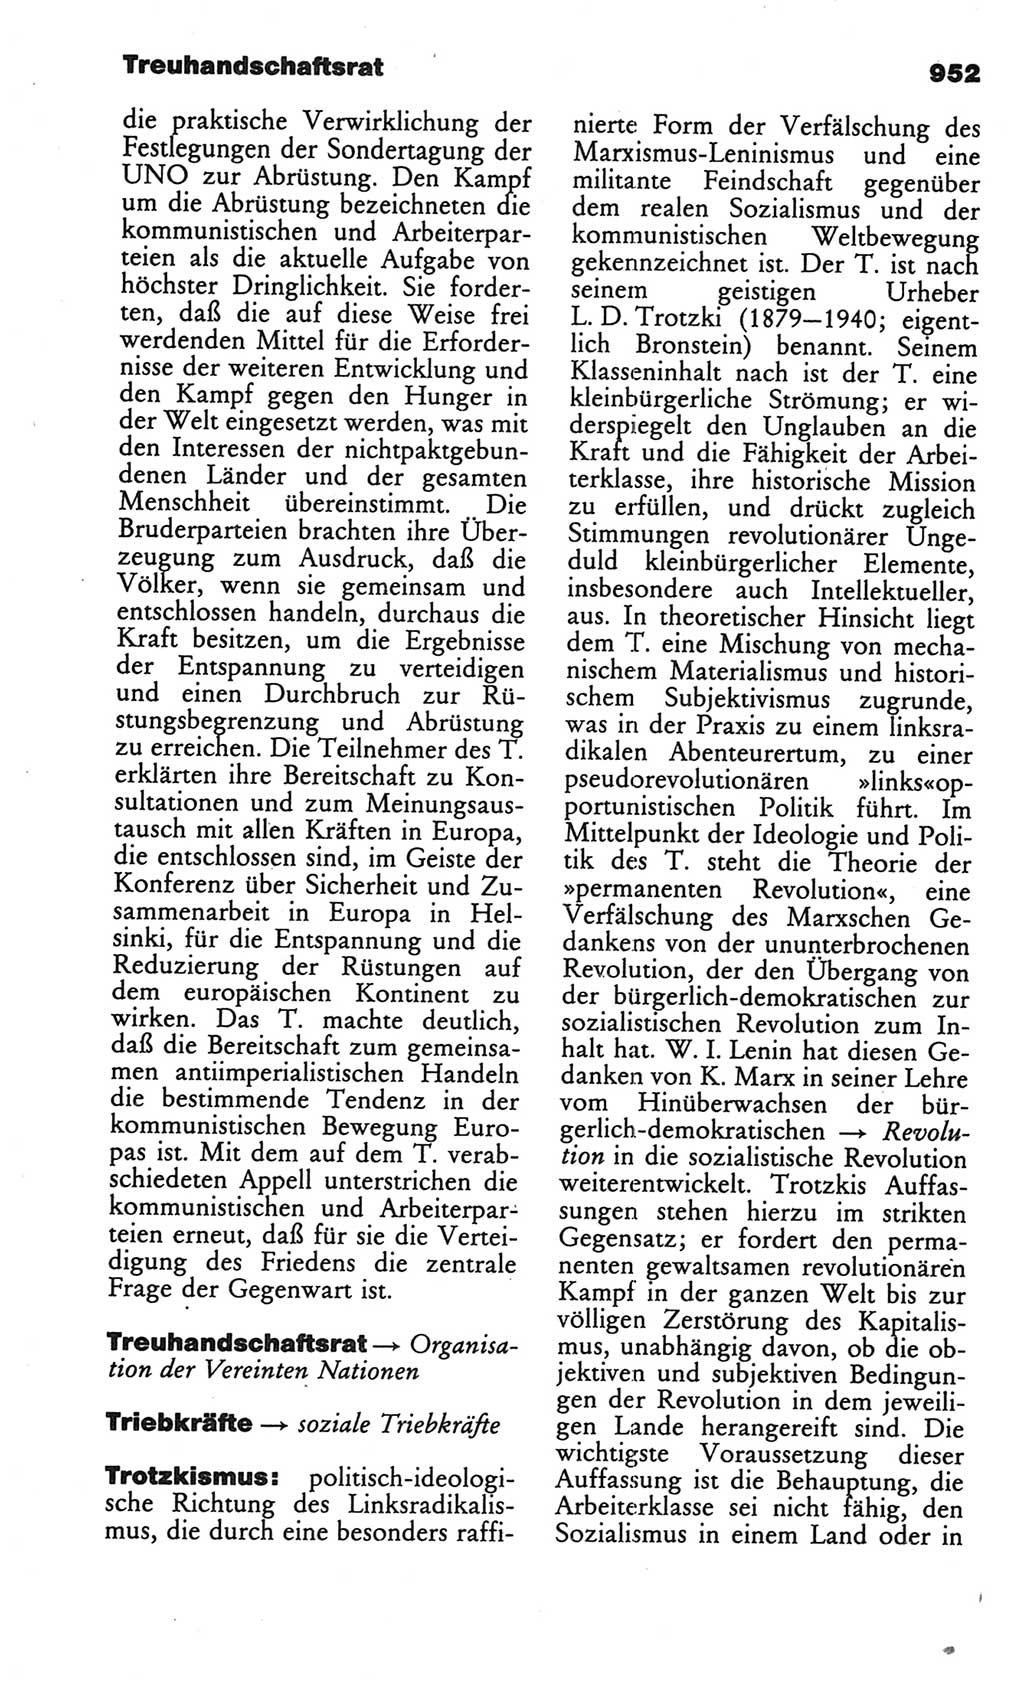 Kleines politisches Wörterbuch [Deutsche Demokratische Republik (DDR)] 1986, Seite 952 (Kl. pol. Wb. DDR 1986, S. 952)